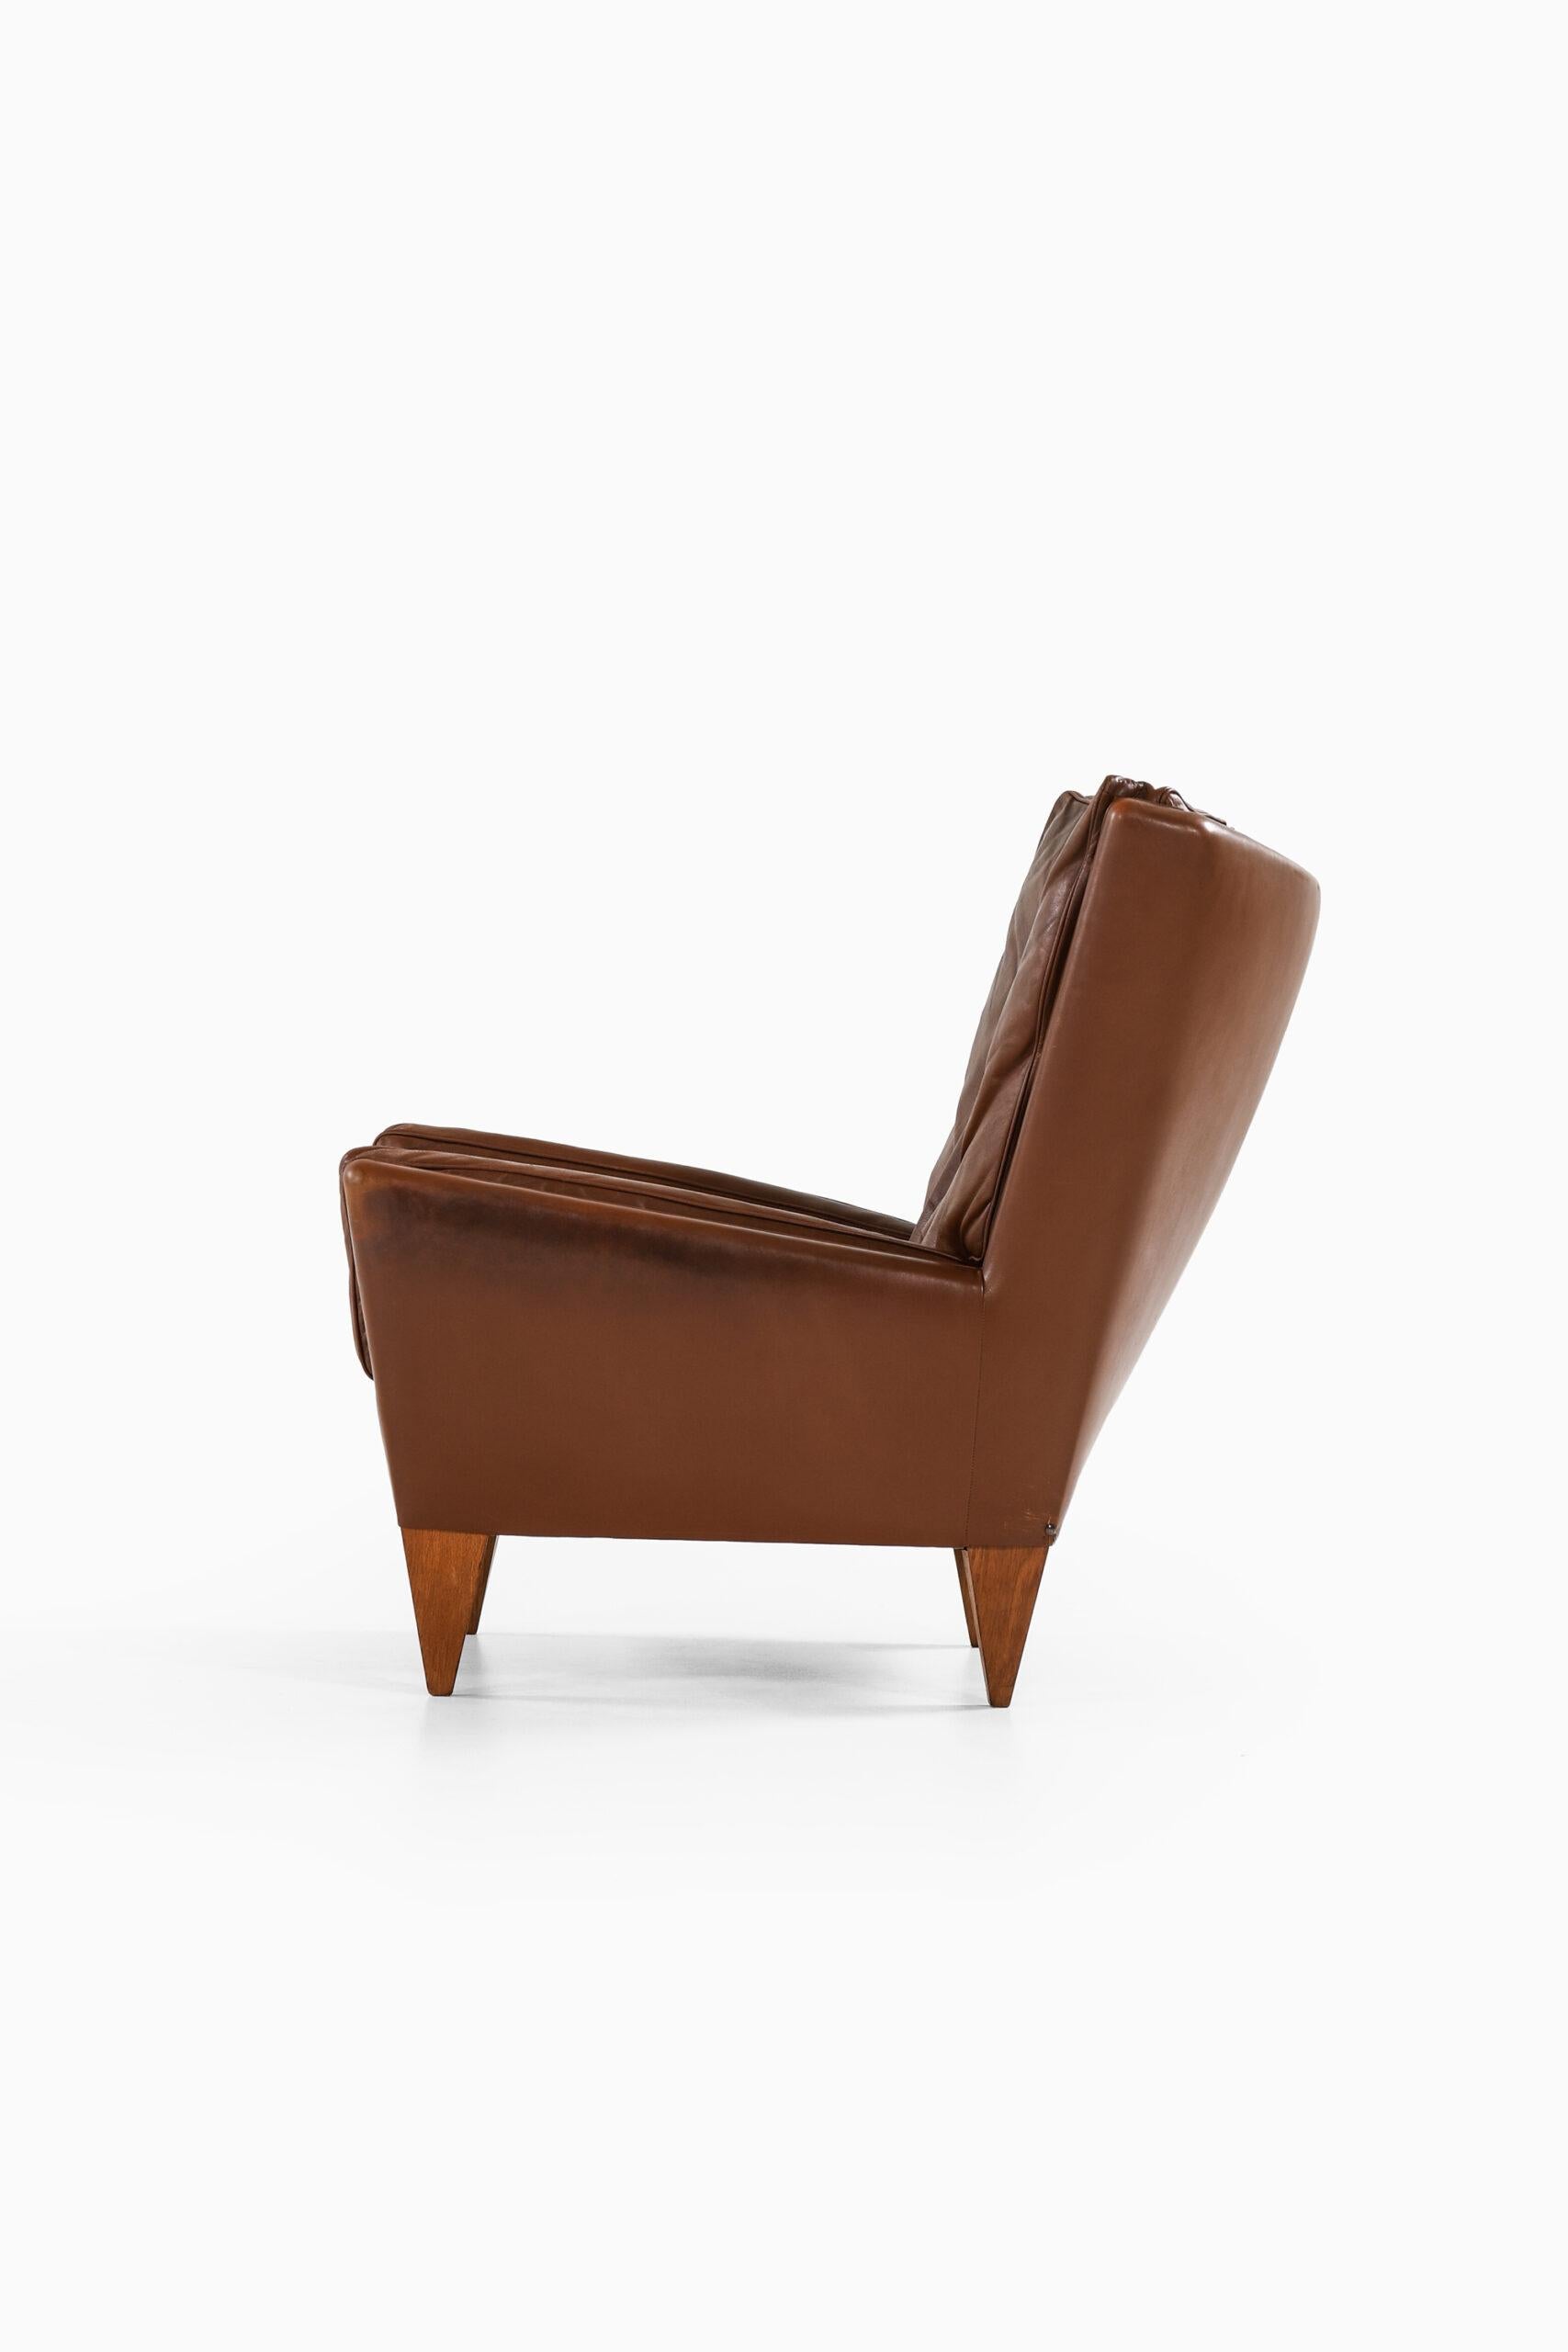 Mid-20th Century Illum Wikkelsø Easy Chair Model V11 Produced by Holger Christiansen in Denmark For Sale